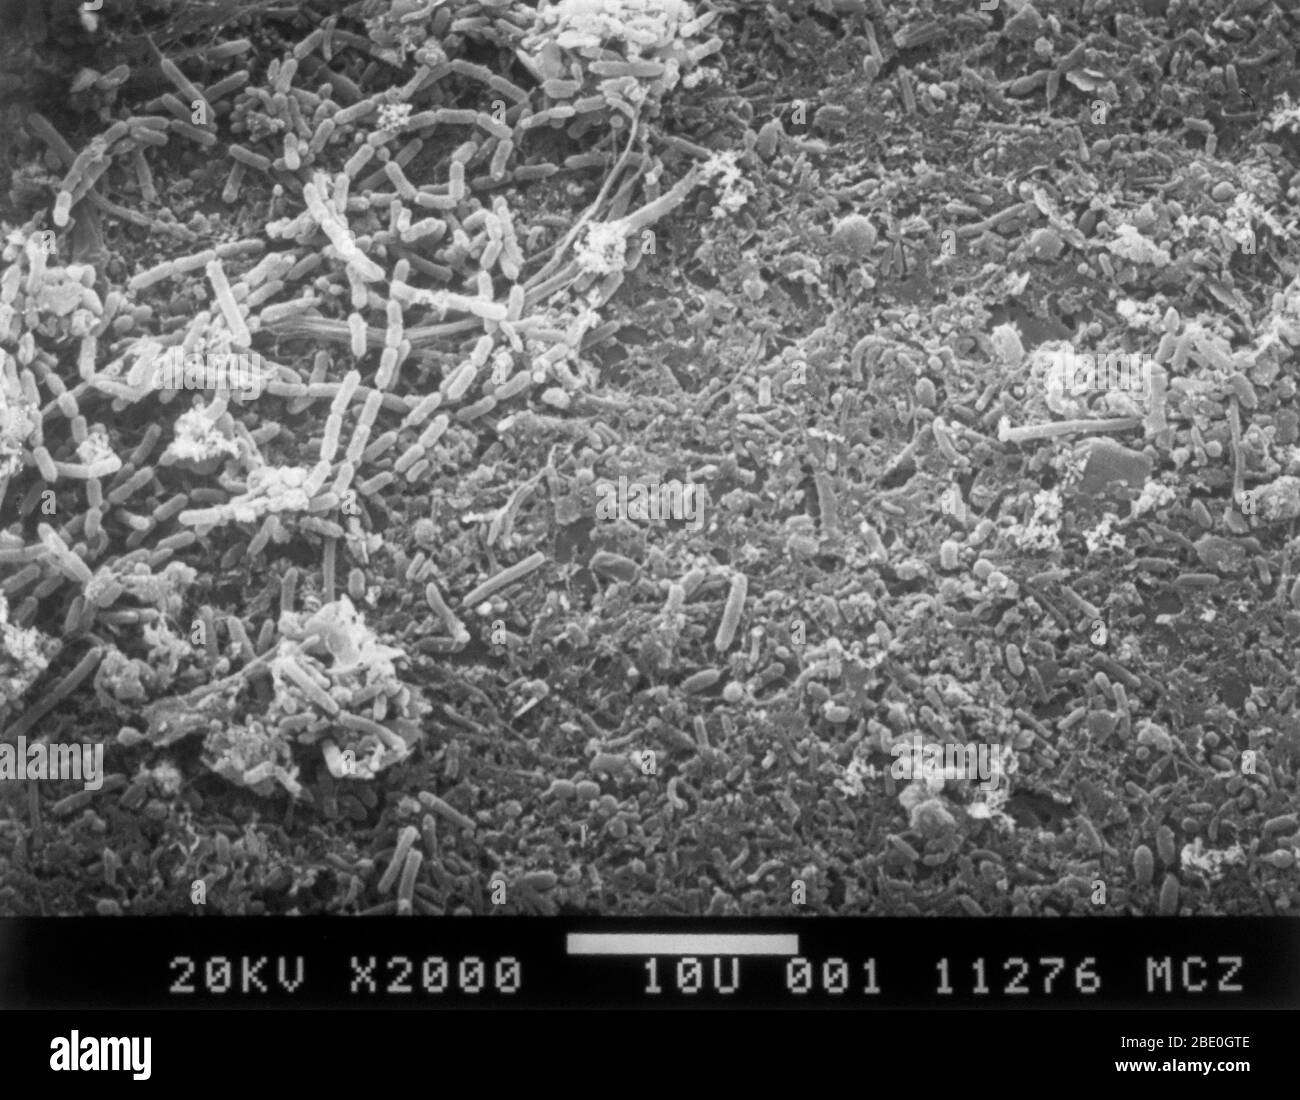 Exploración de micrografía electrónica (SEM) de aguas residuales sin procesar filtradas en una membrana de nucleóforos. Observe la bacteria filamentosa y varias bacterias en forma de varilla. Ampliación de 2000x a un tamaño de imagen de 35 mm. Foto de stock